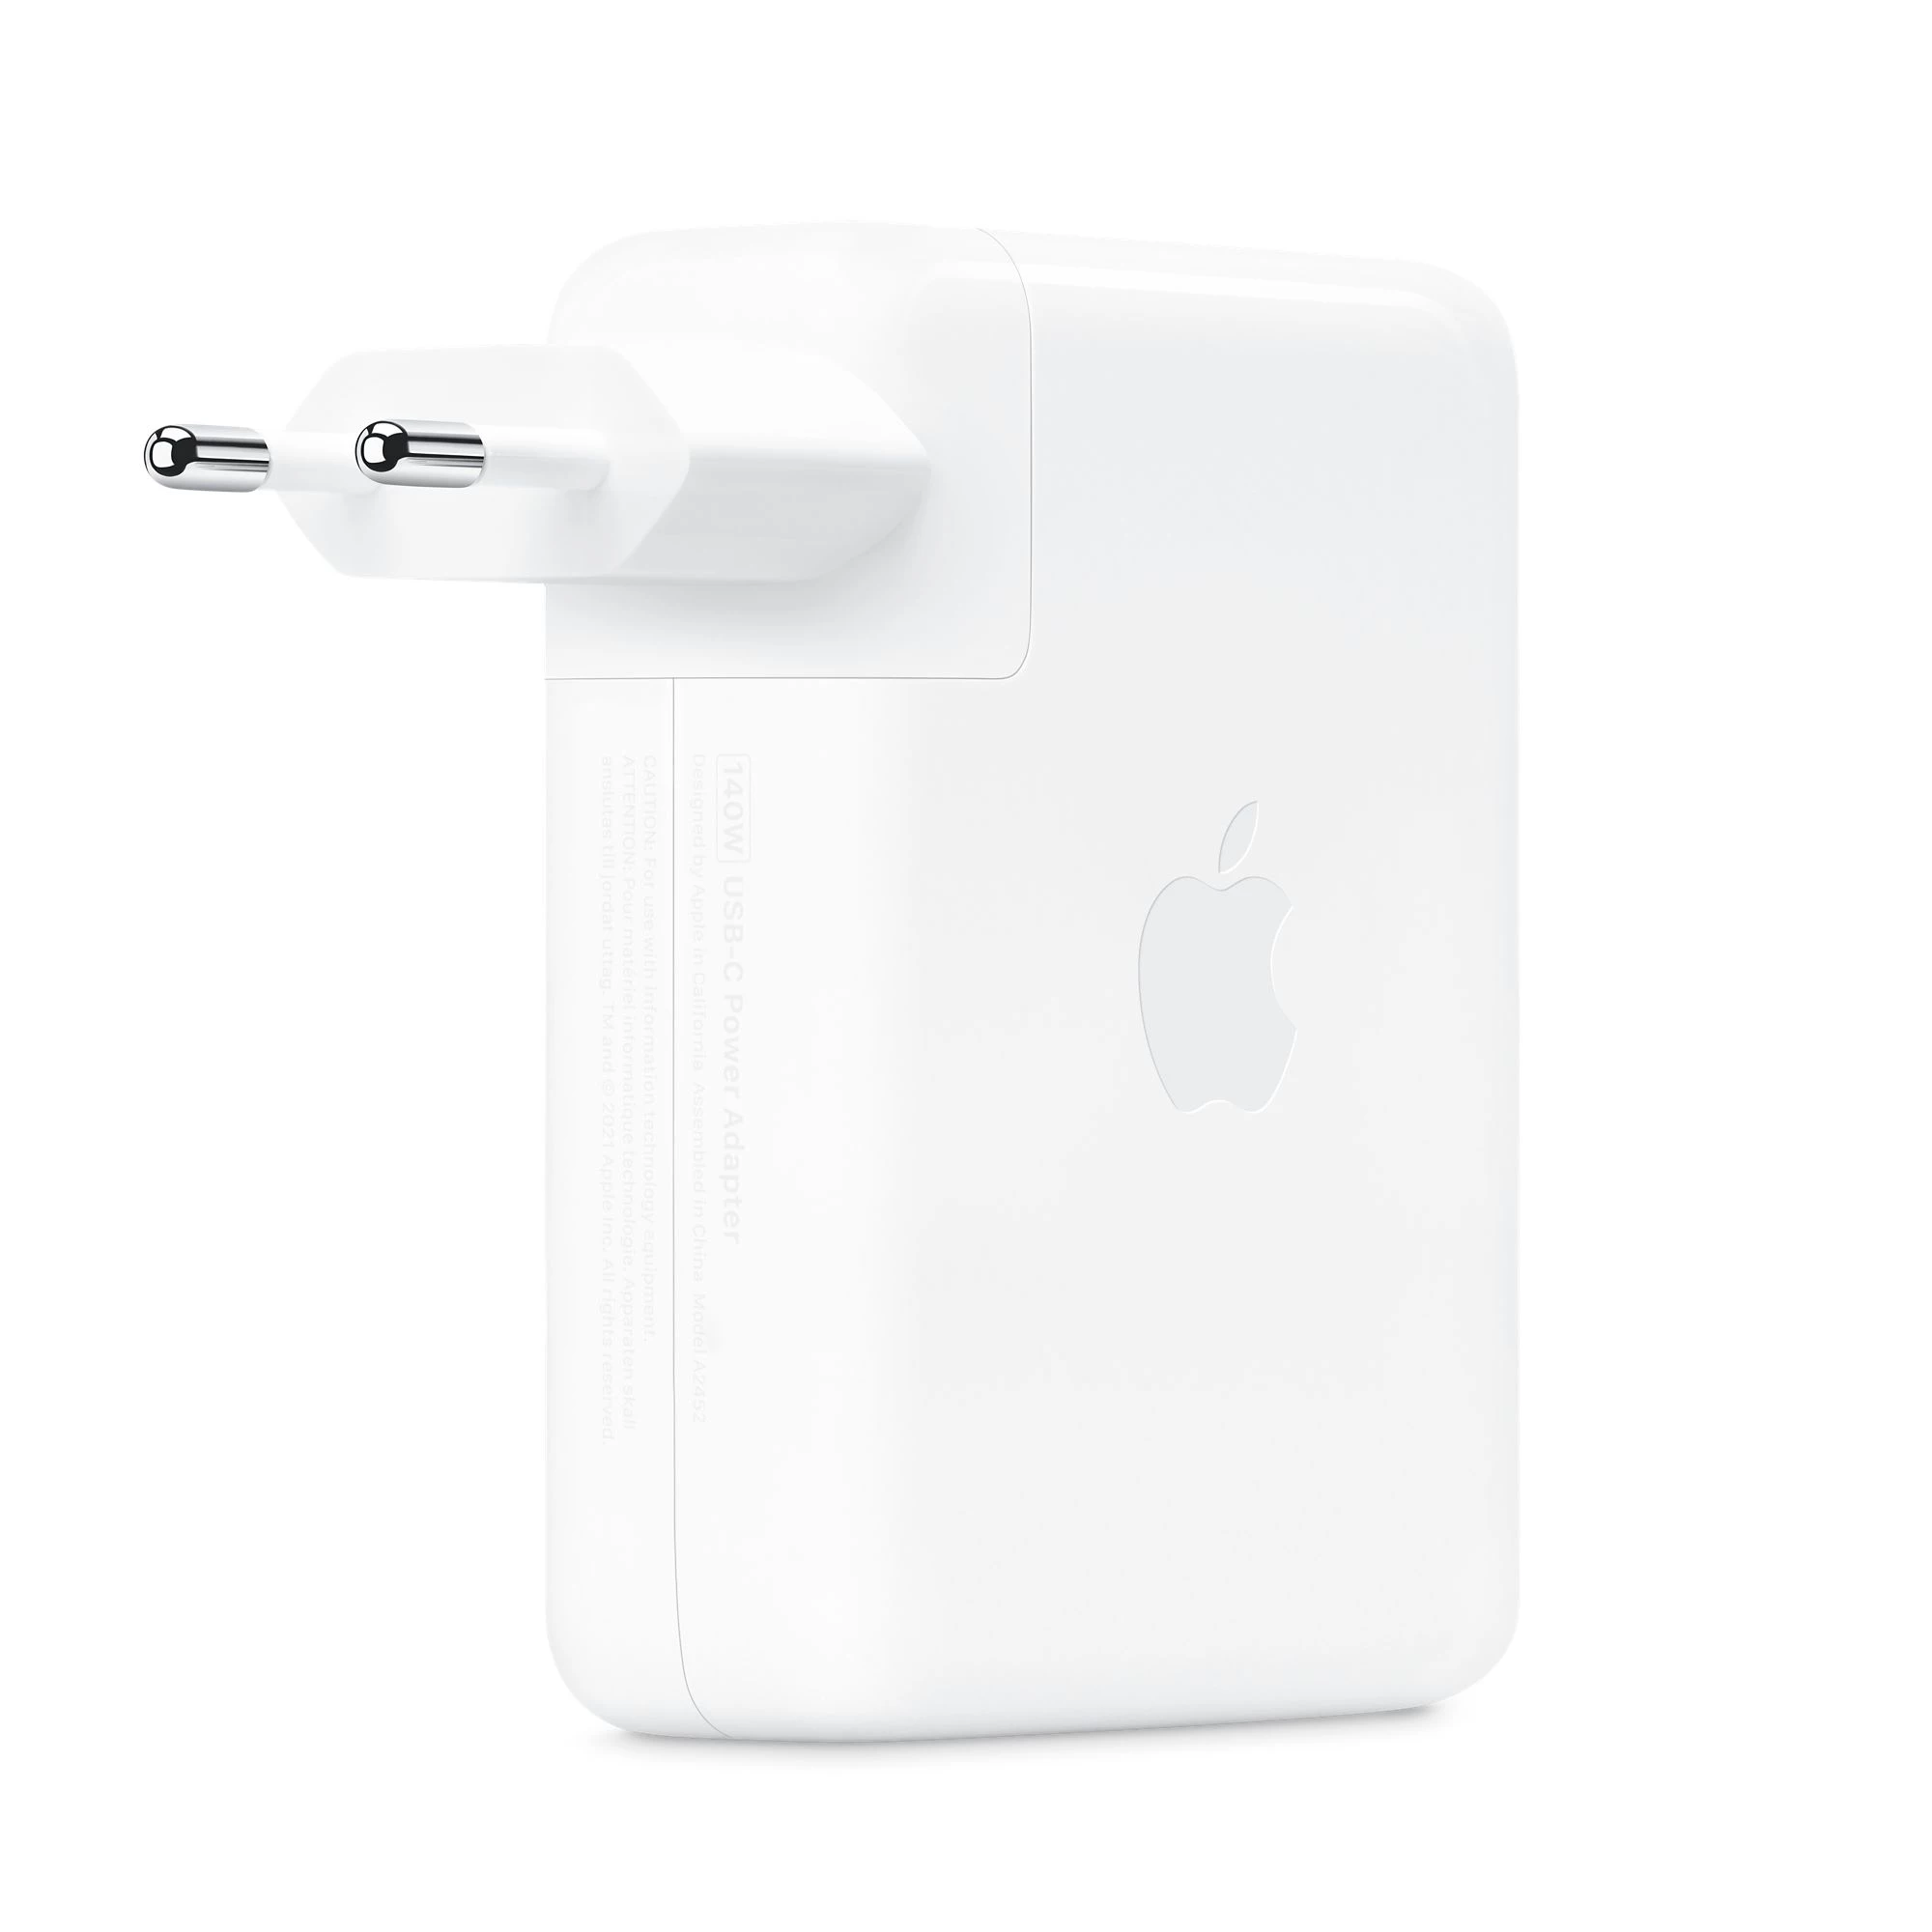 Apple 140W USB-C Power Adapter (MLYU3) EUROPE - купить выгодно в Киеве |  цена и обзор в интернет магазине Newtime